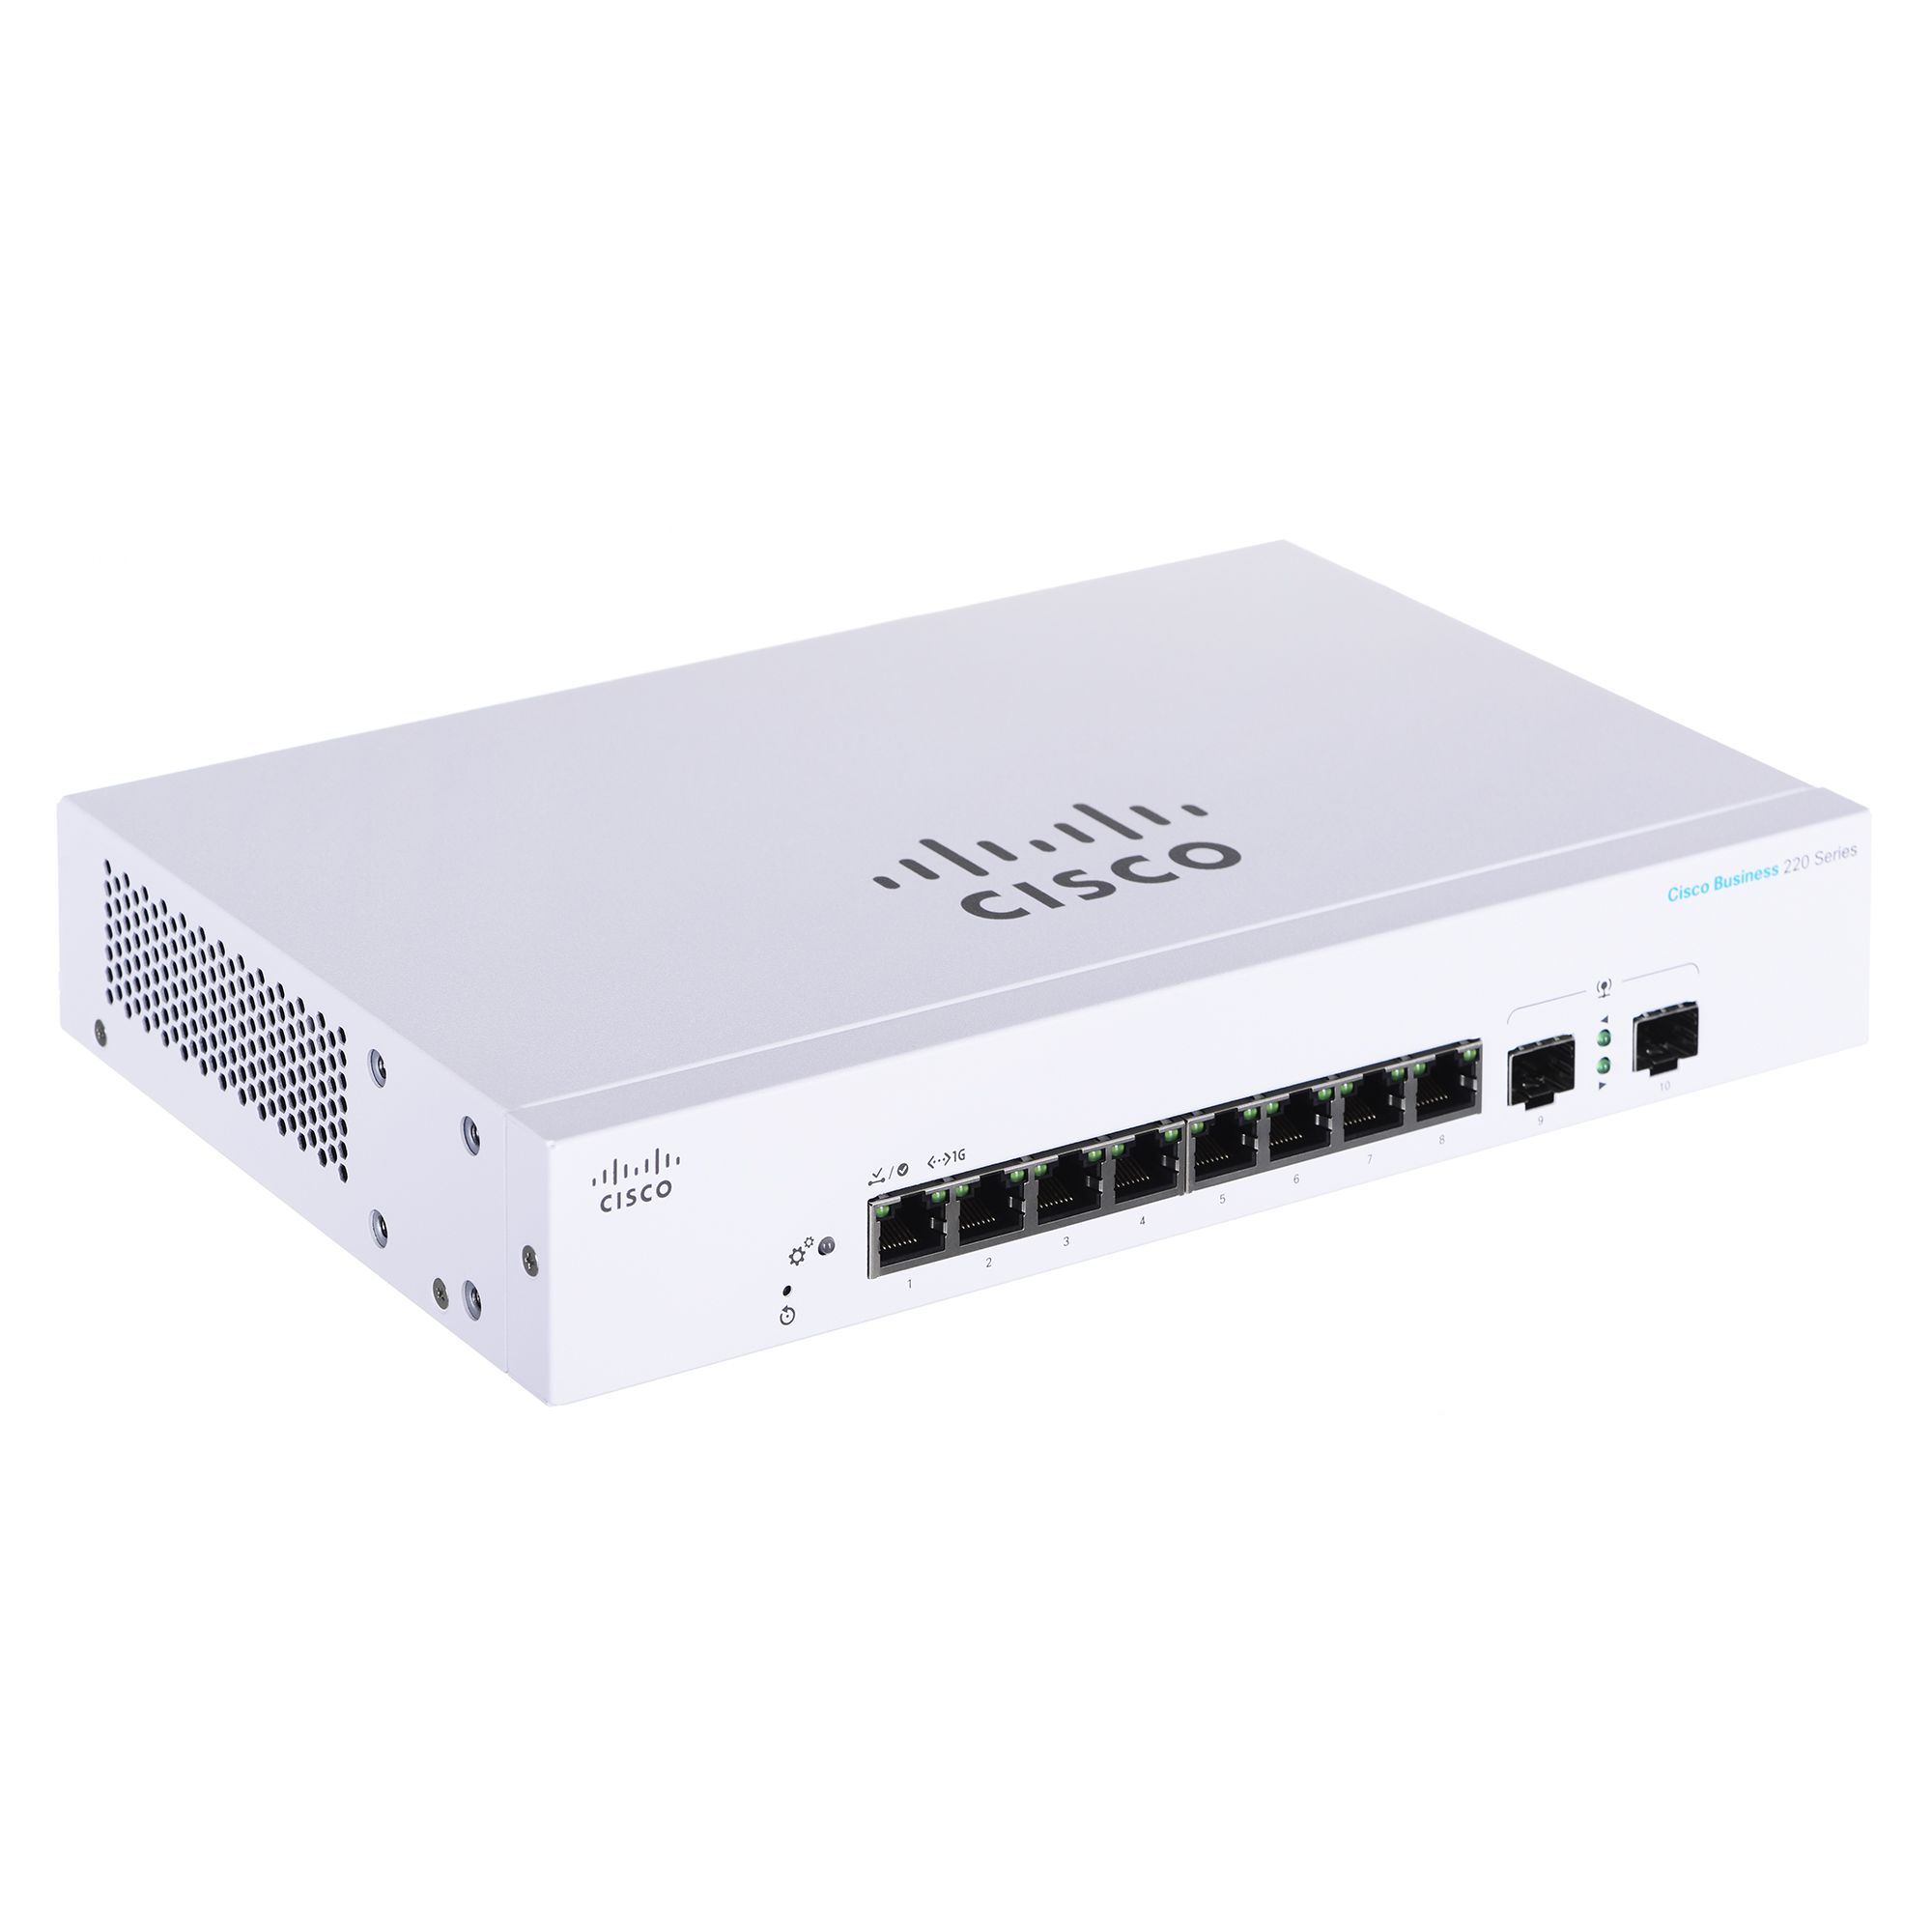 Cisco CBS220-8T-E-2G Managed L2 Gigabit Ethernet (10/100/1000) 1U White_1